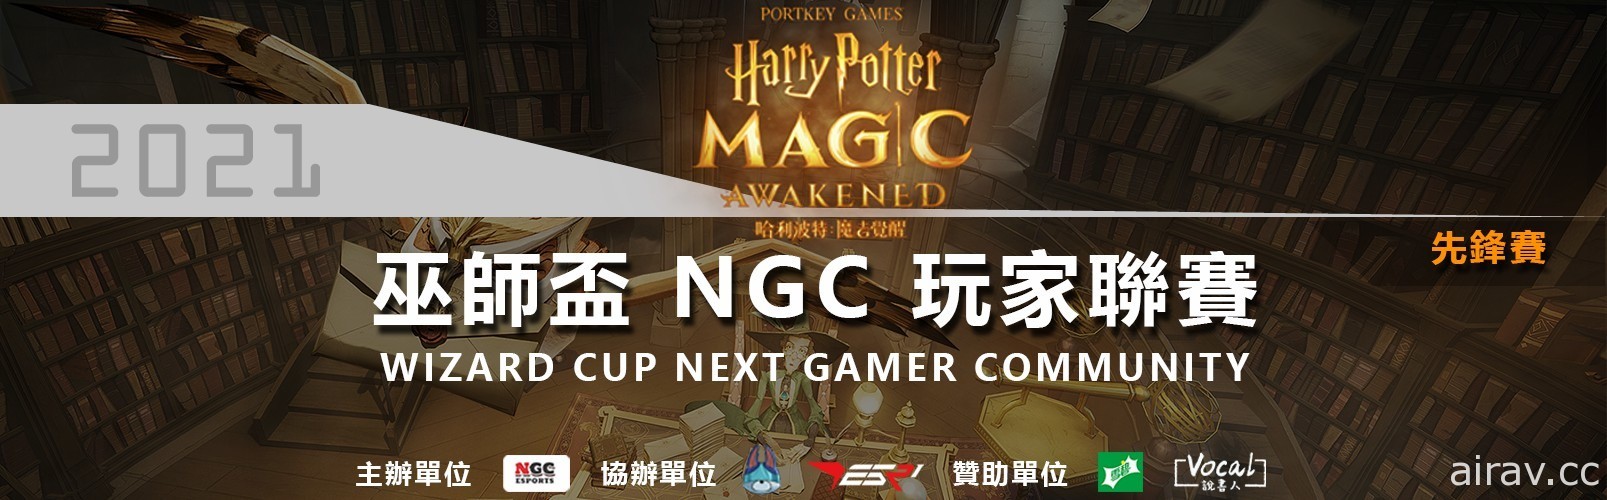 《哈利波特魔法覺醒》巫師盃 NGC 玩家聯賽總決賽完美落幕